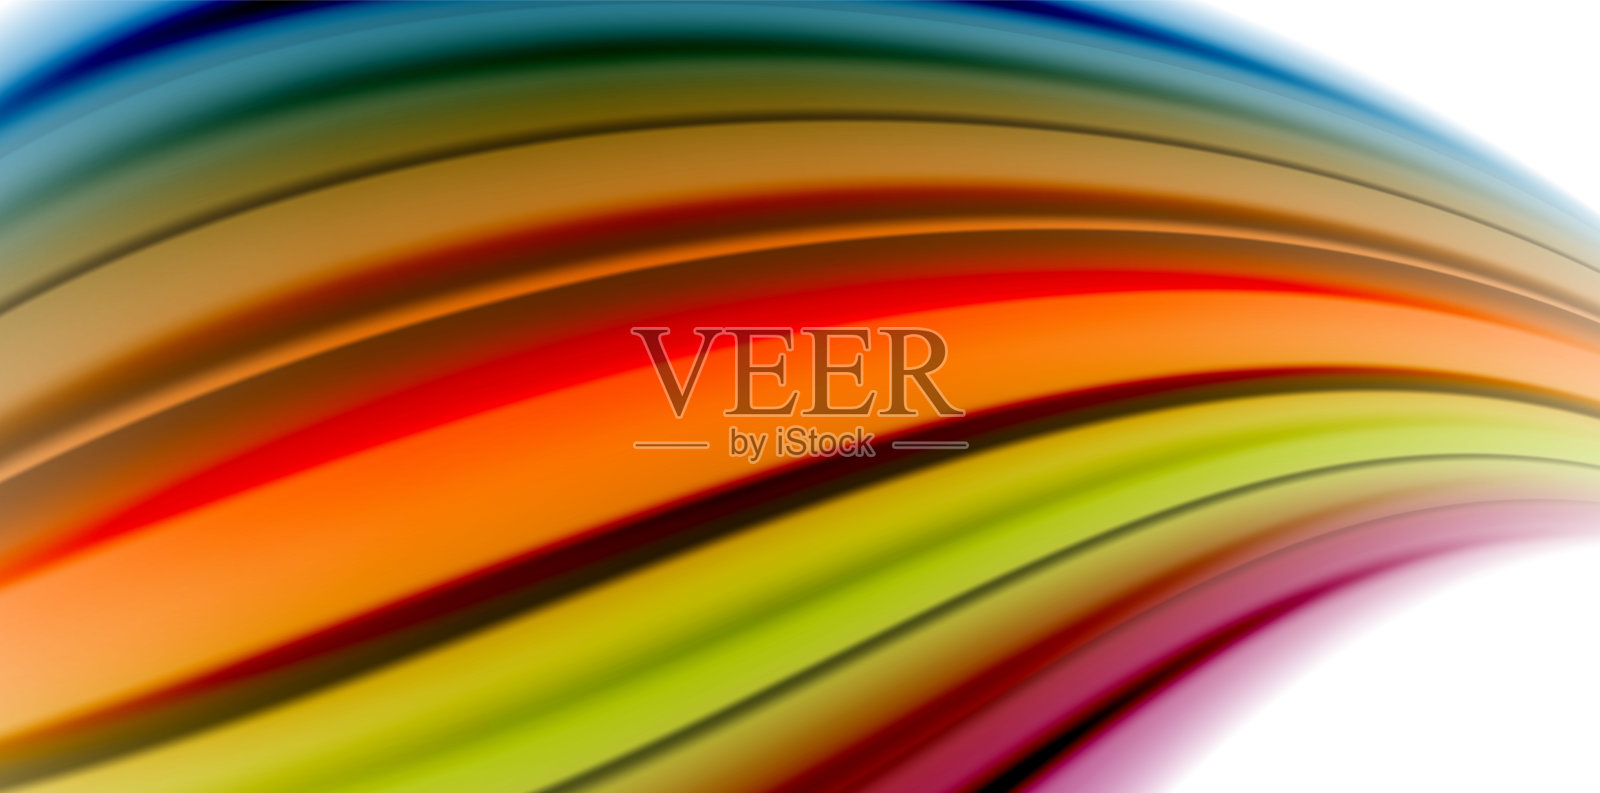 啫喱液体流动的彩虹风格色彩，波浪抽象的背景，现代简约多彩的设计插画图片素材